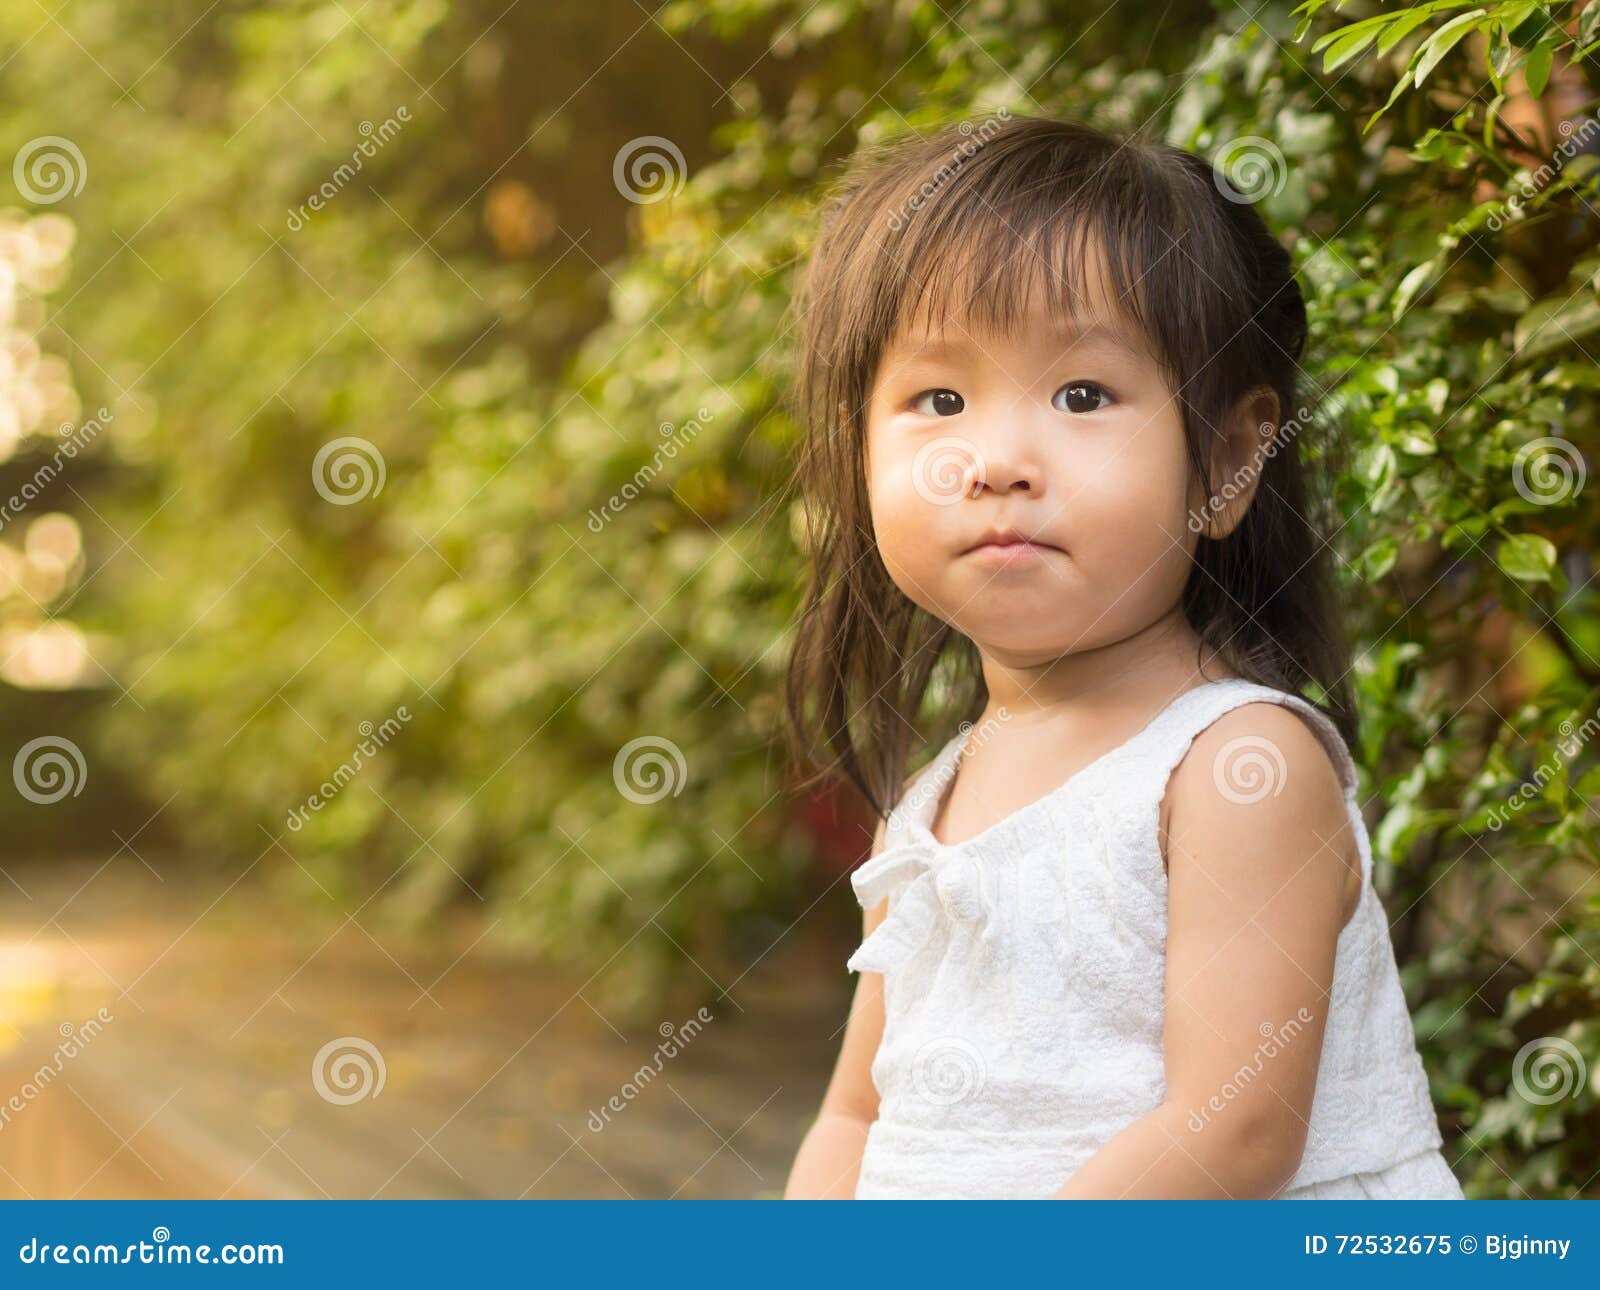 Little Asian Girl Sit in the Garden Stock Image - Image of garden ...